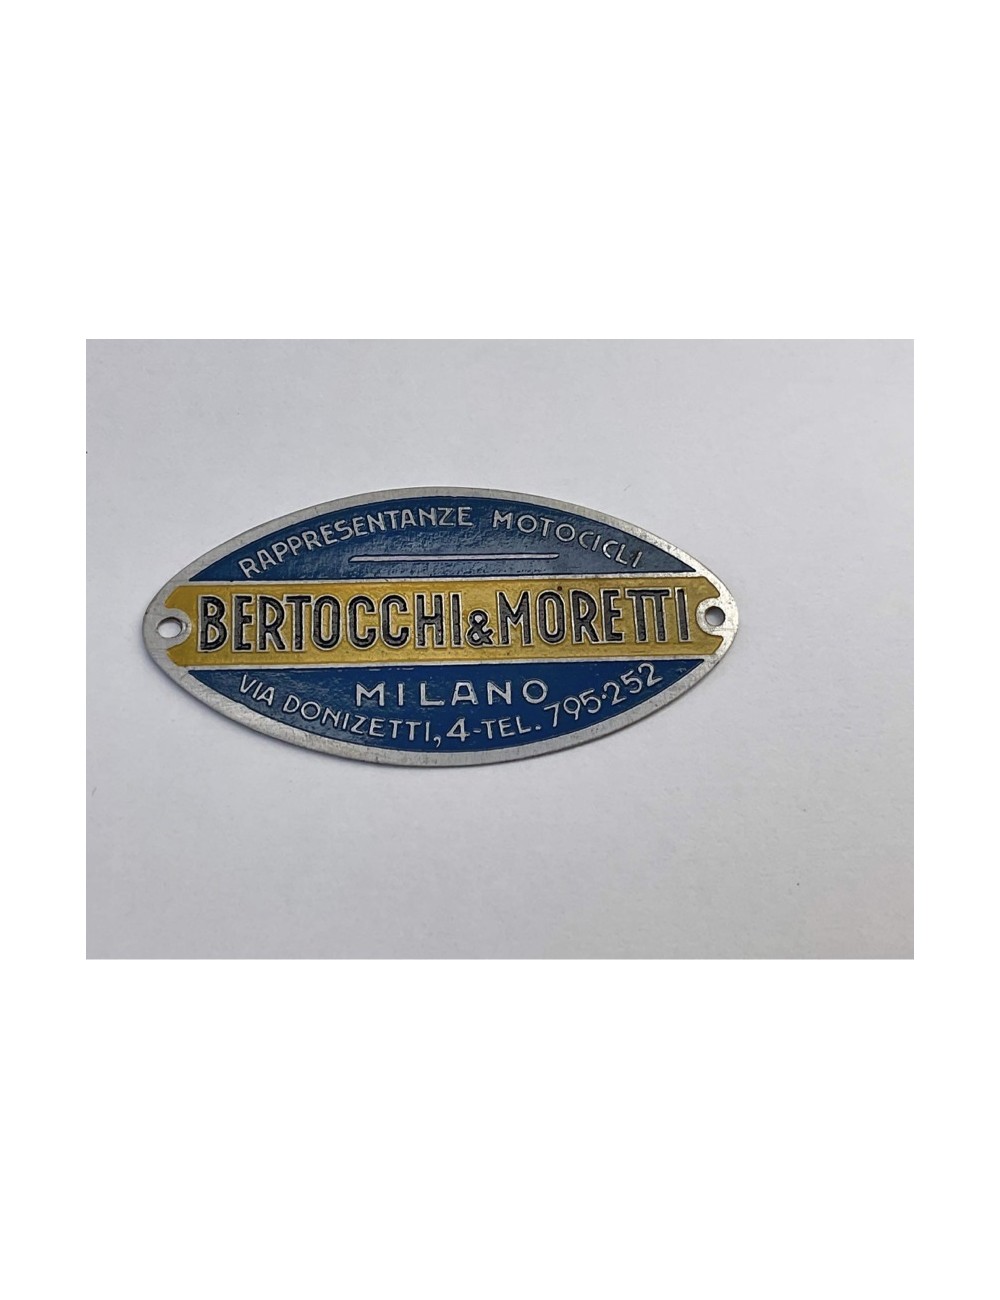 Targhetta concessionario Bertocchi & Moretti. Dimensioni: 6,5 cm x 3 cm